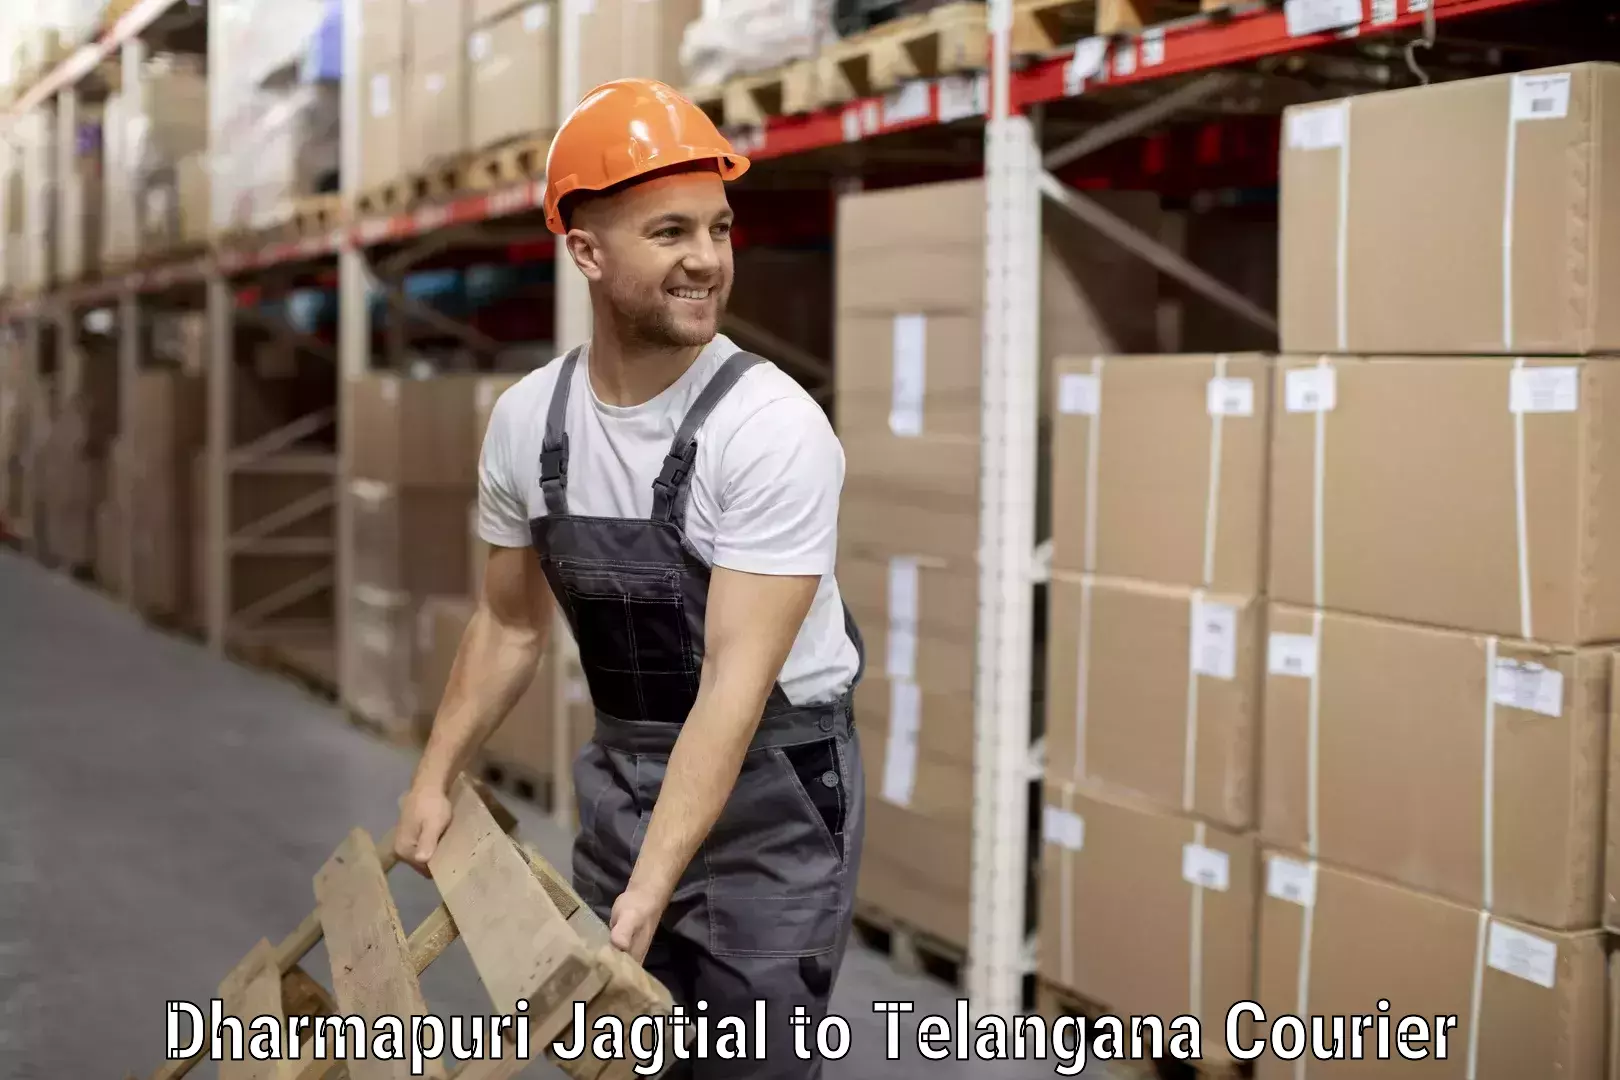 Luggage delivery operations in Dharmapuri Jagtial to Babasagar